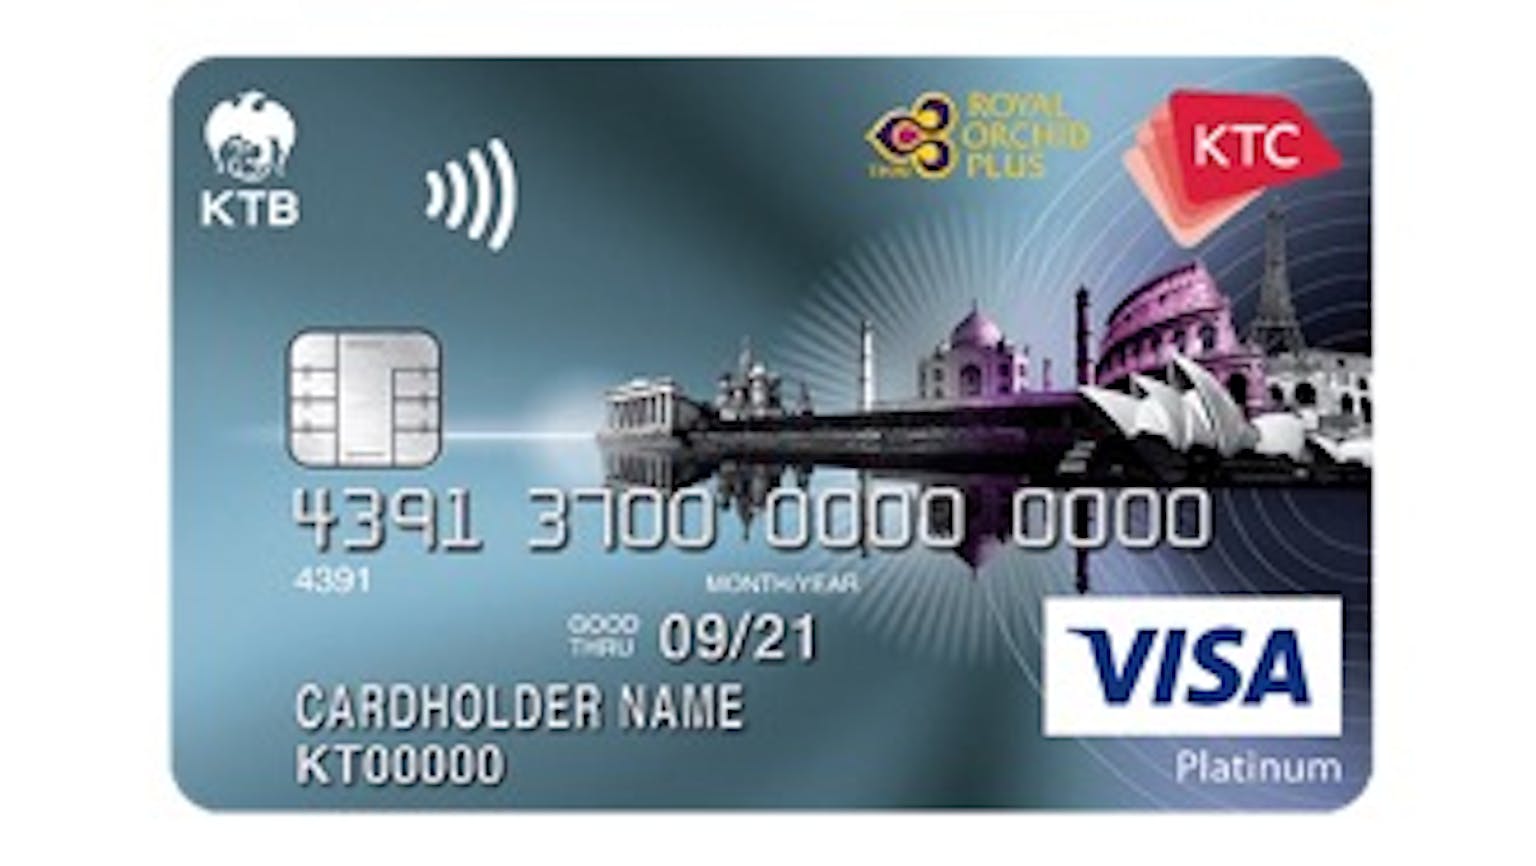 บัตรเครดิต เคทีซี รอยัล ออร์คิด พลัส วีซ่าแพลทินั่ม | บัตรกรุงไทย |  Moneyduck Thailand